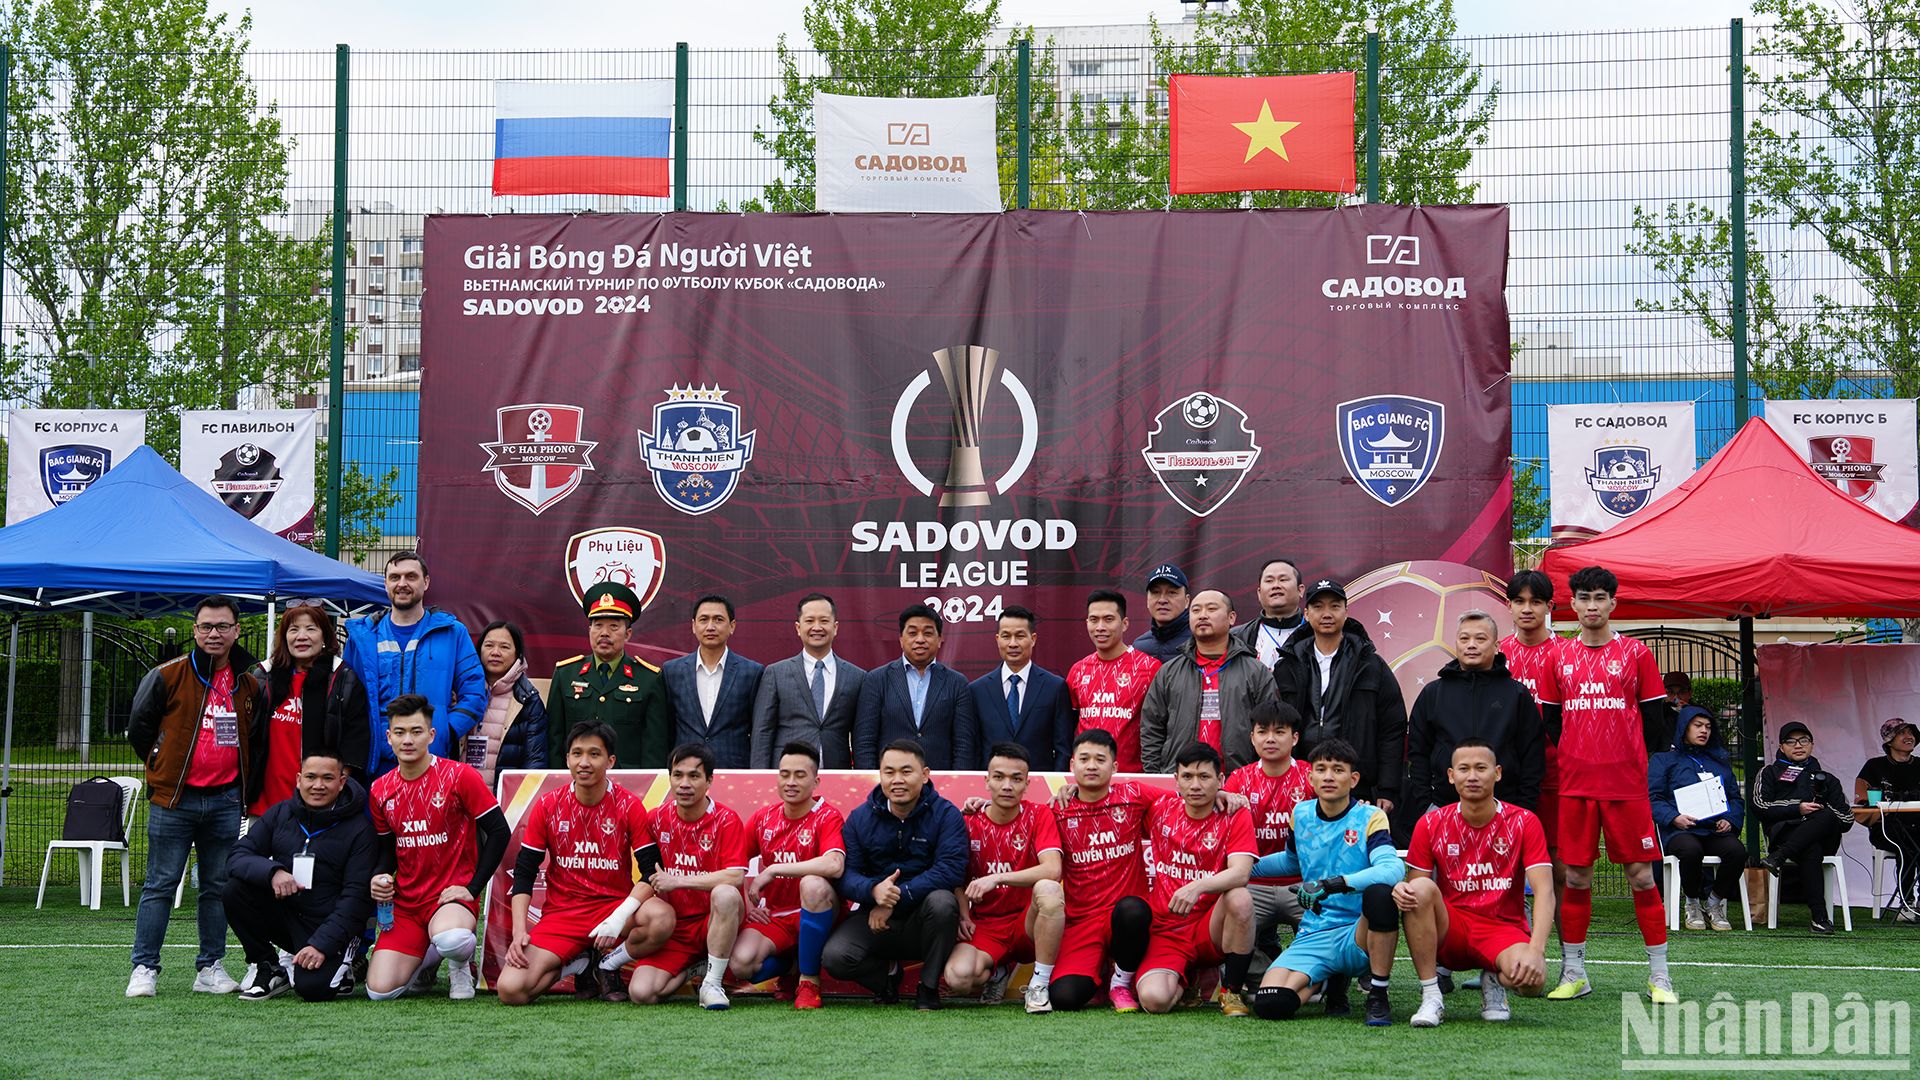 FC Hải Phòng - Tân binh của giải đấu.